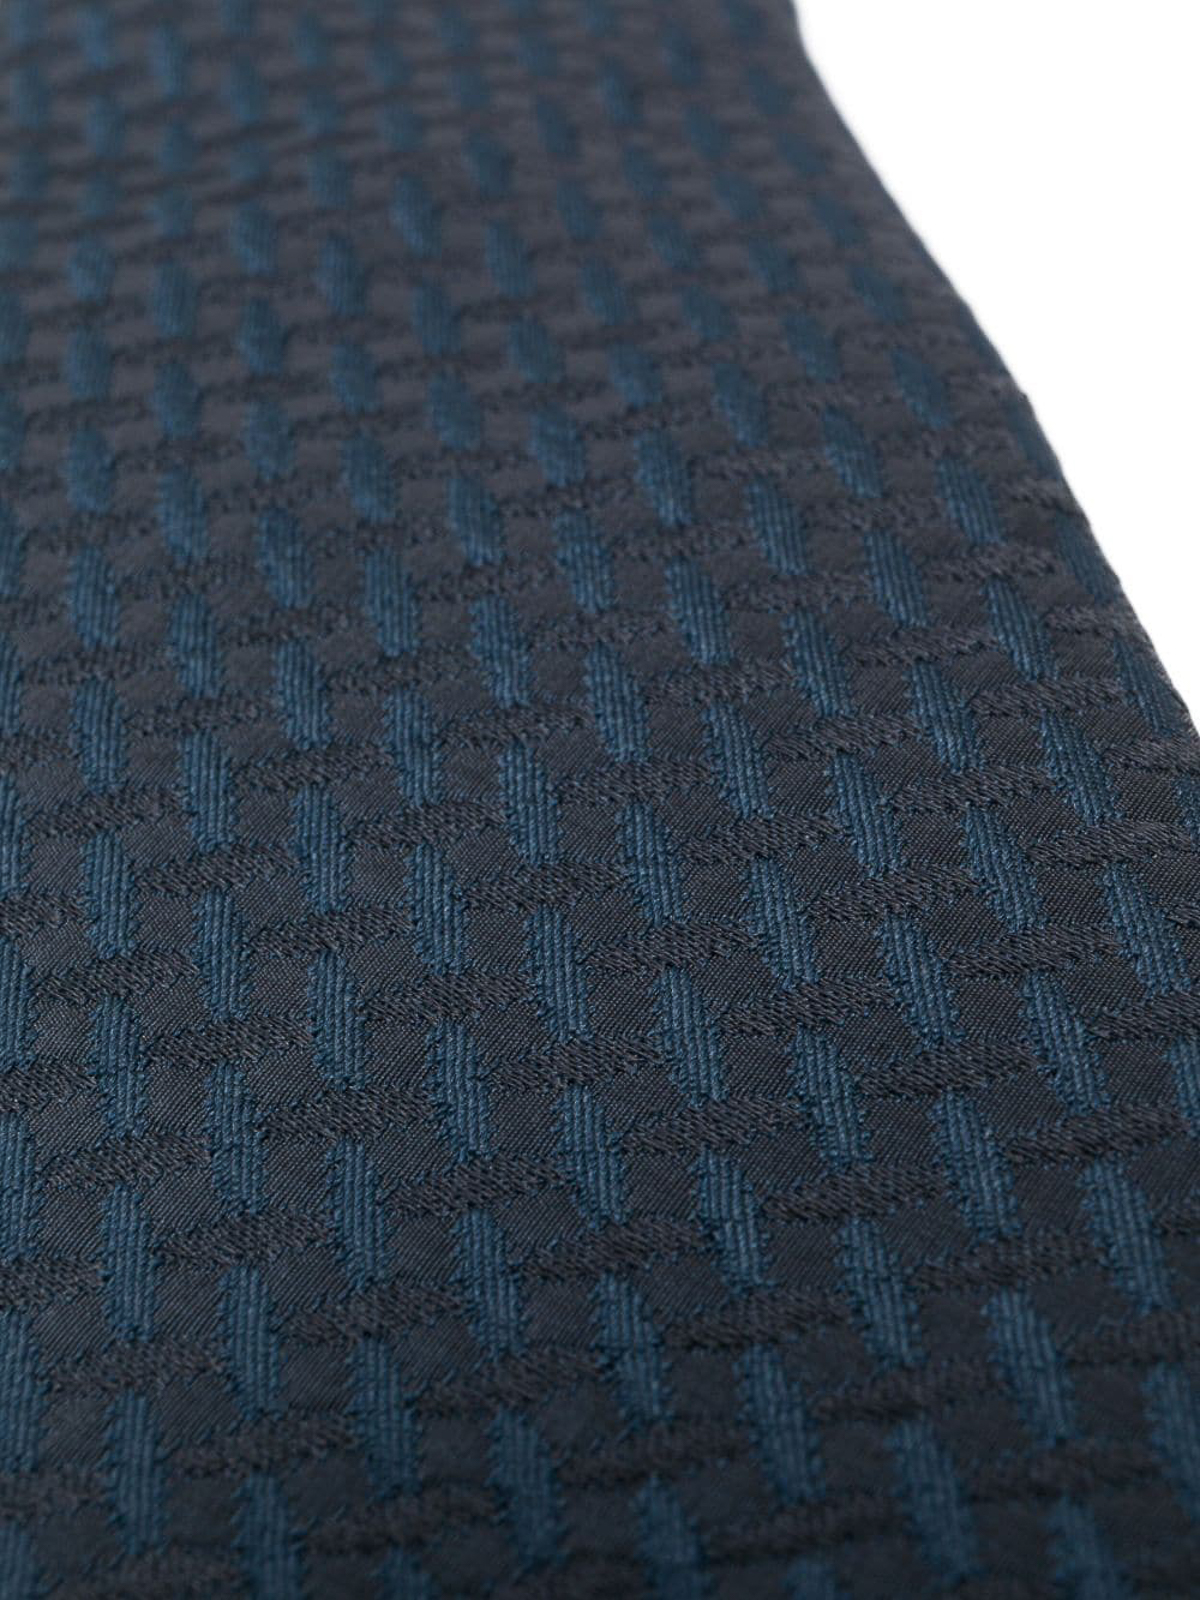 Shop Giorgio Armani Woven Jacqard Tie In Blue